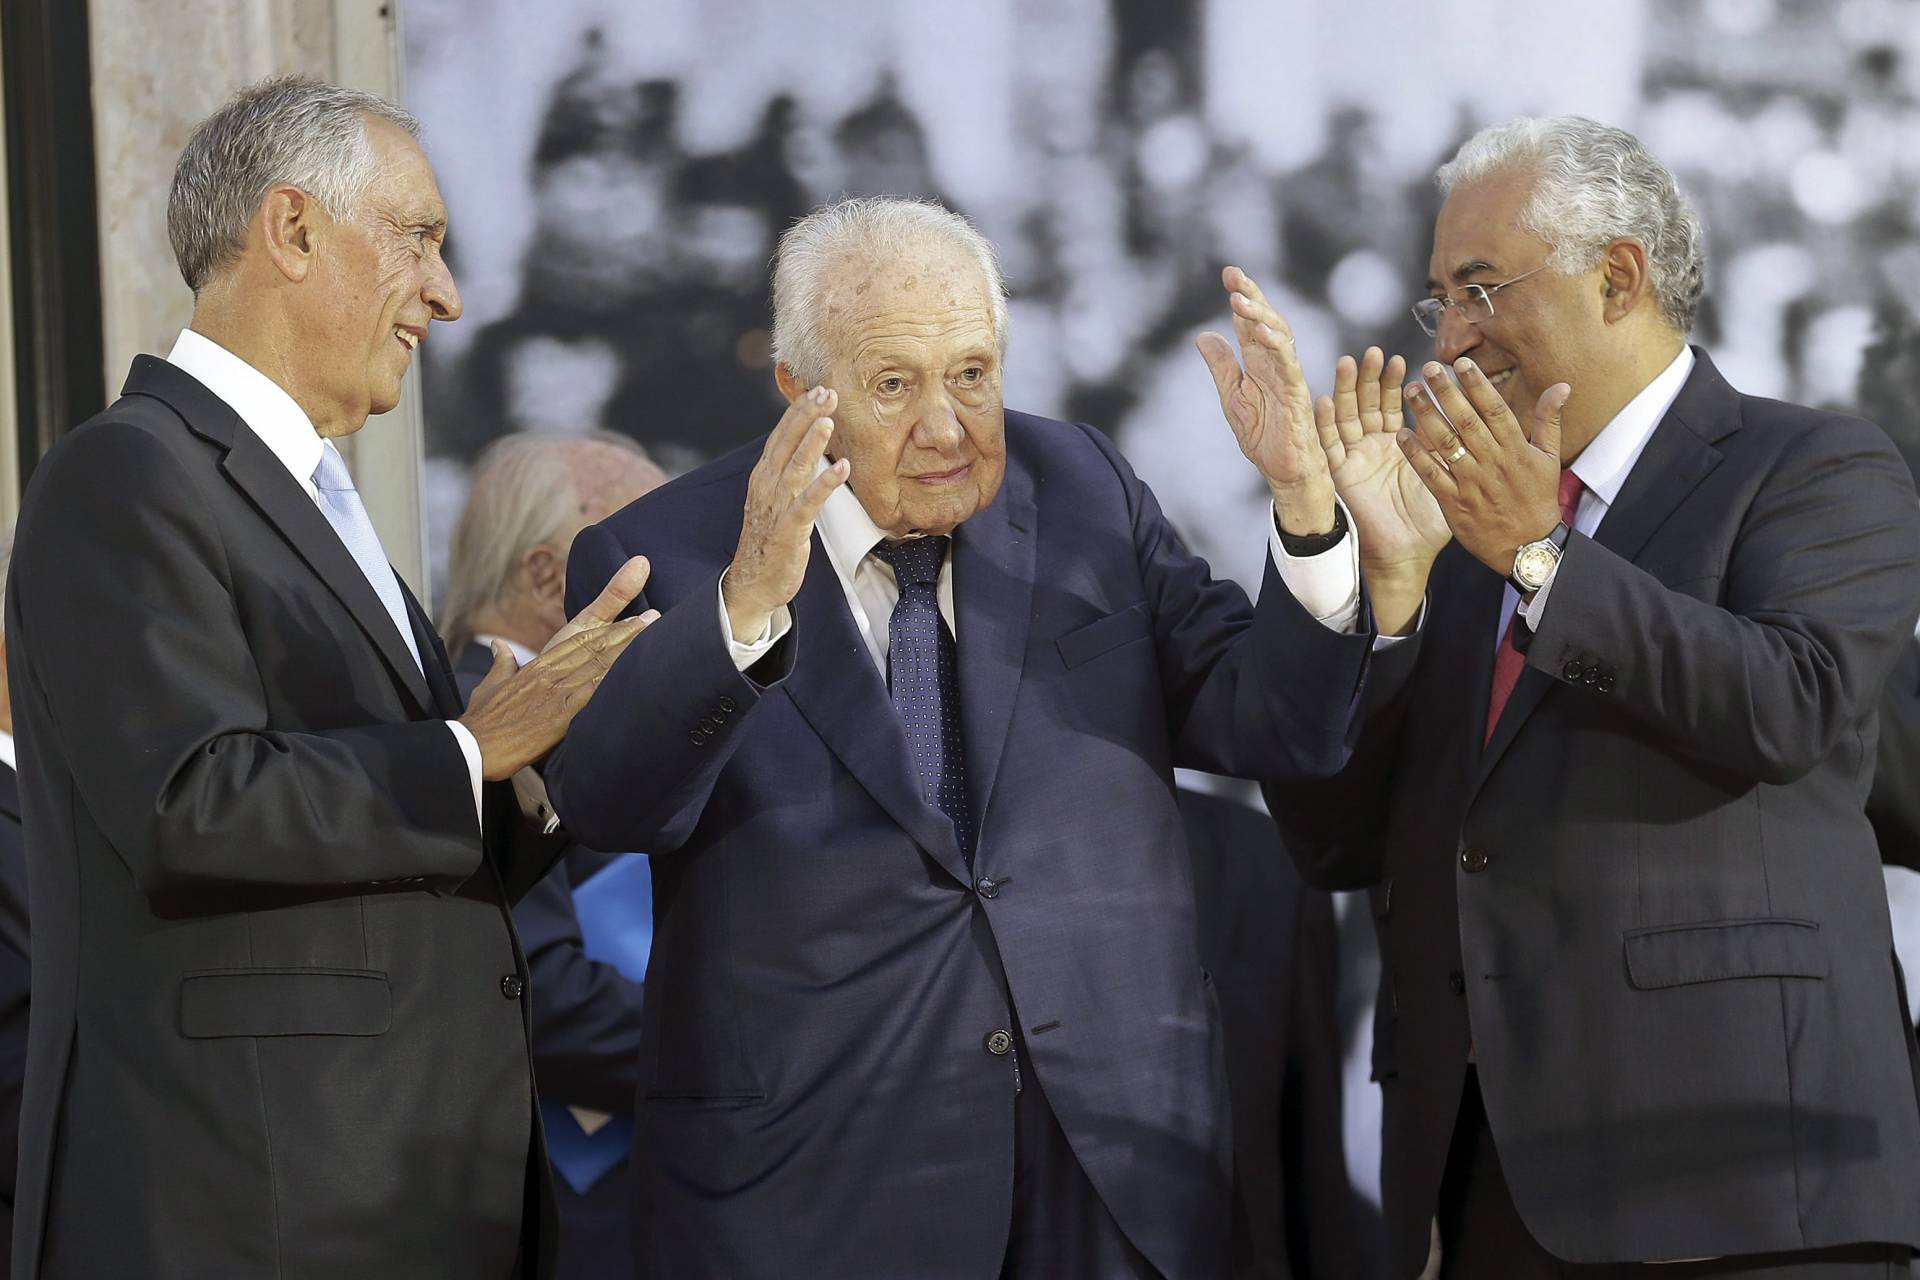 Ex-presidente português Mário Soares morre aos 92 anos